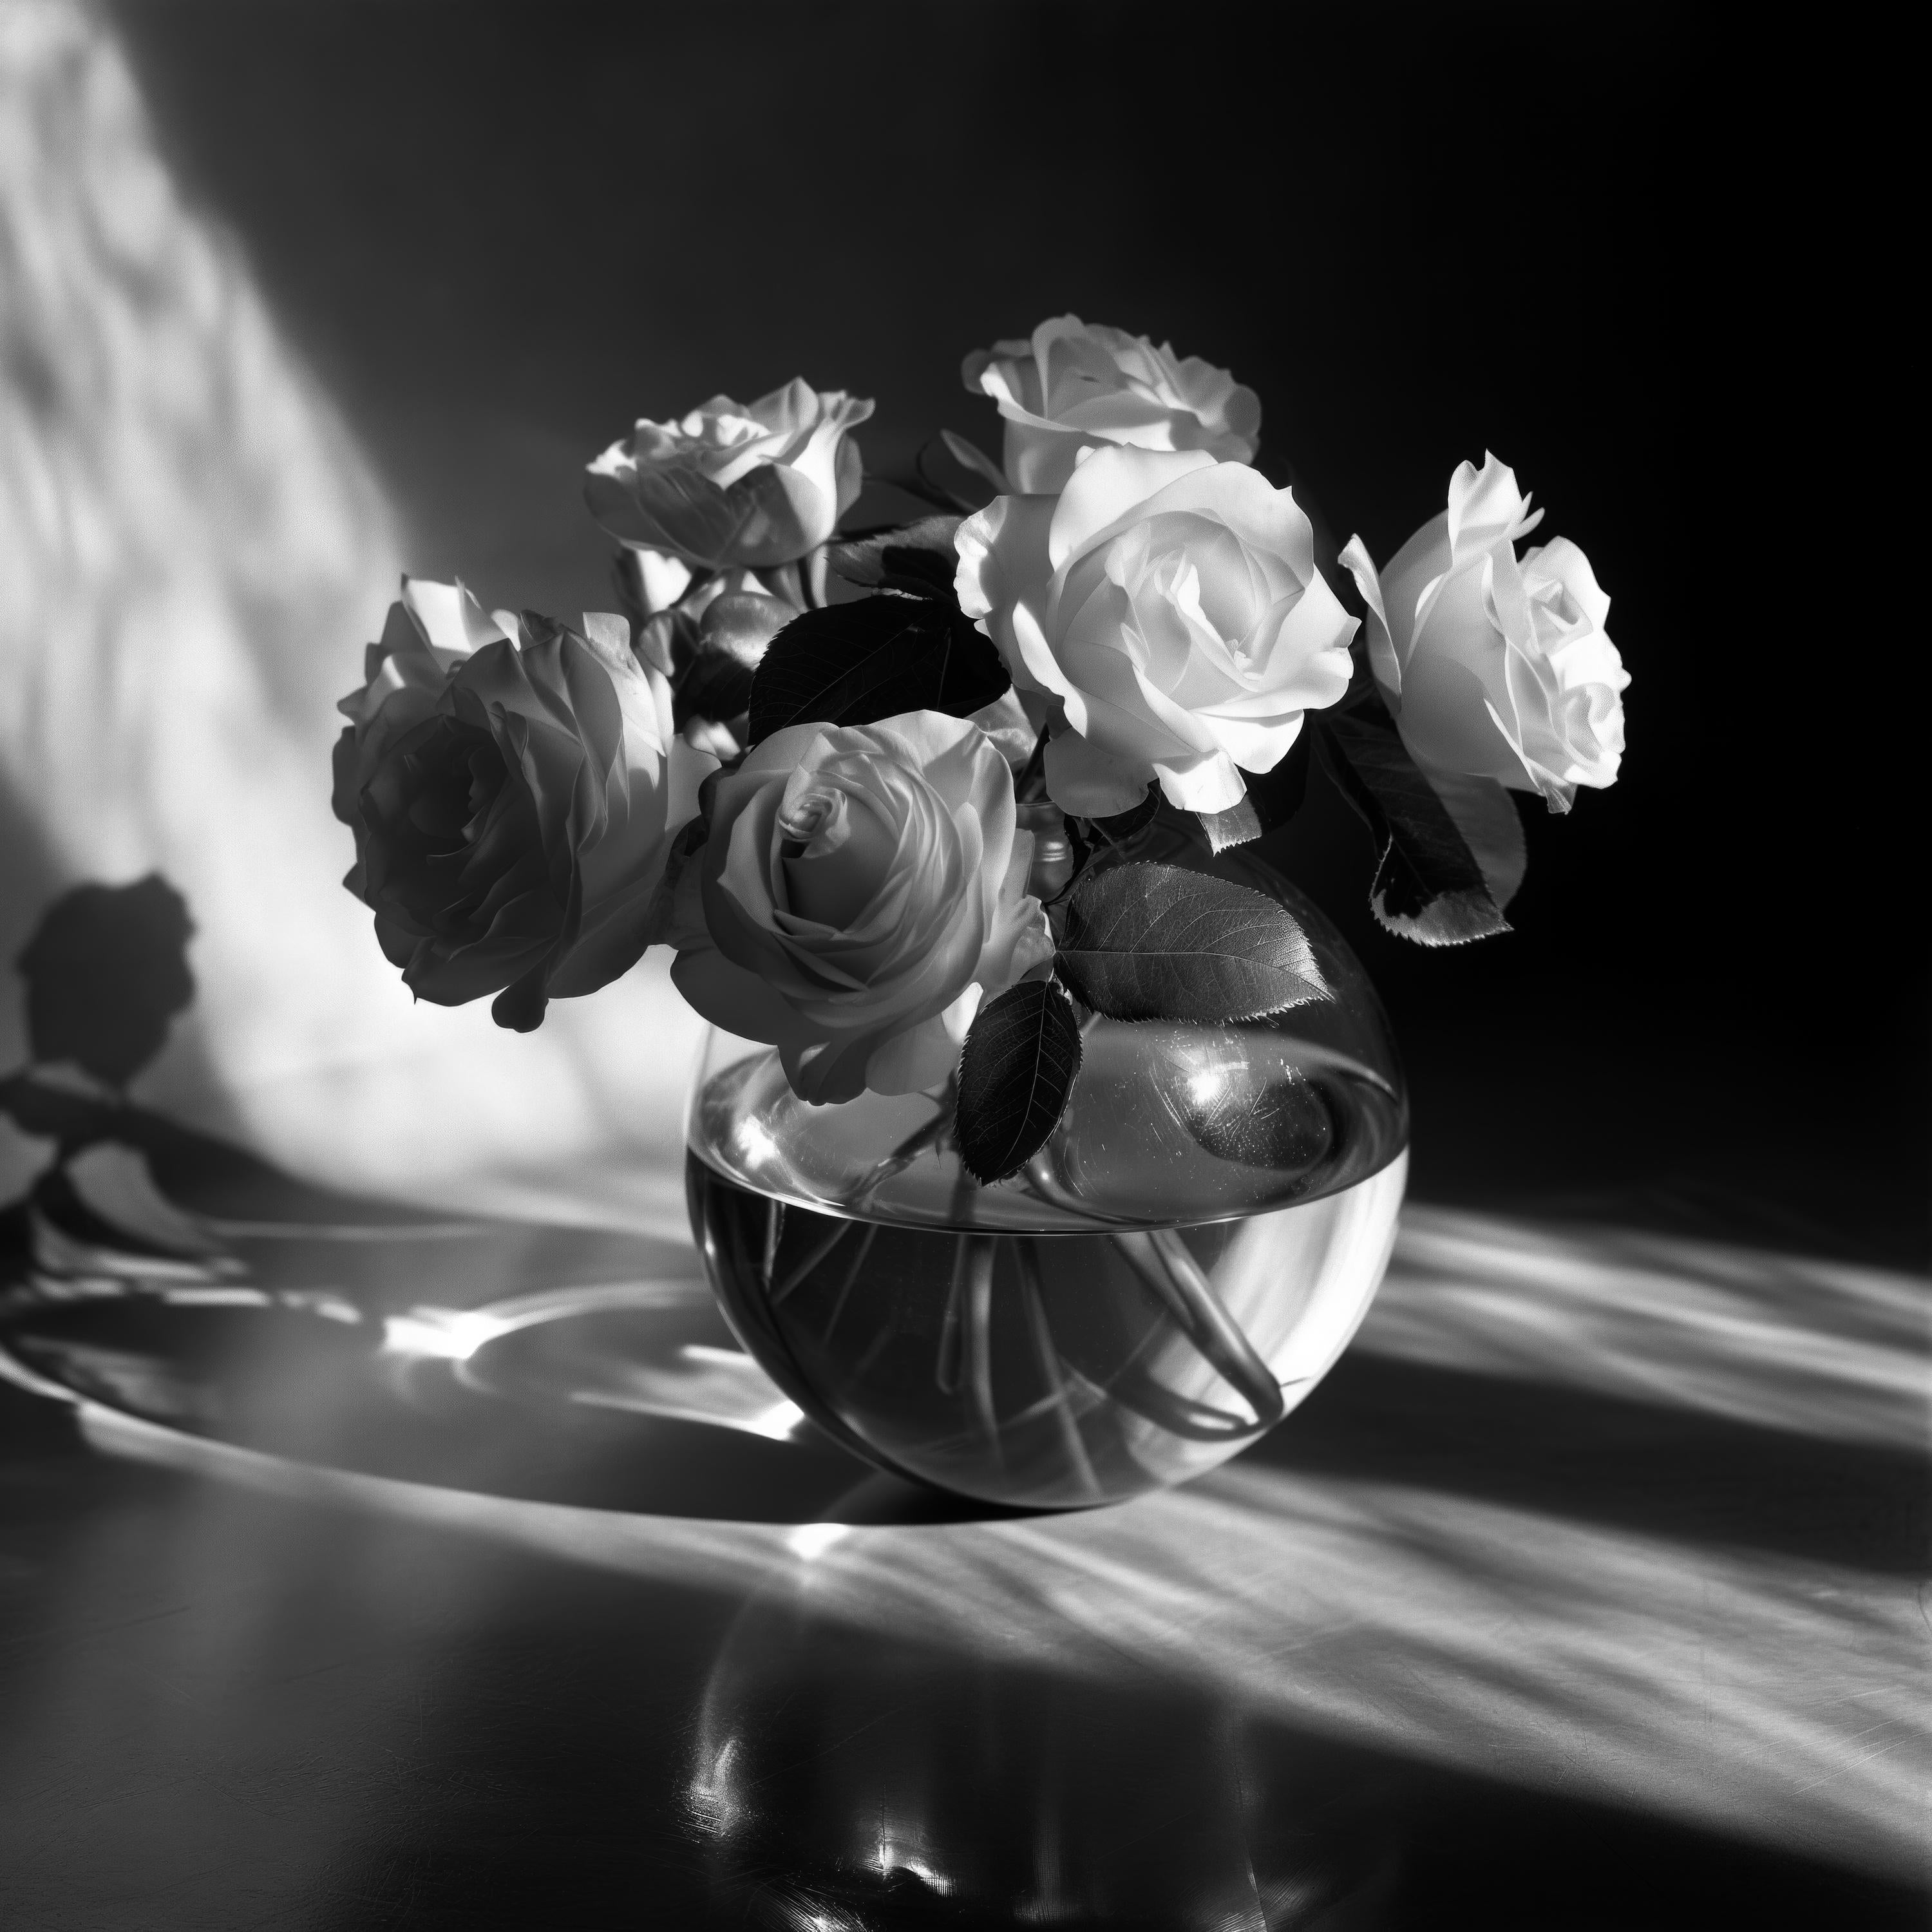 Floral Noir: Rose Composition 140